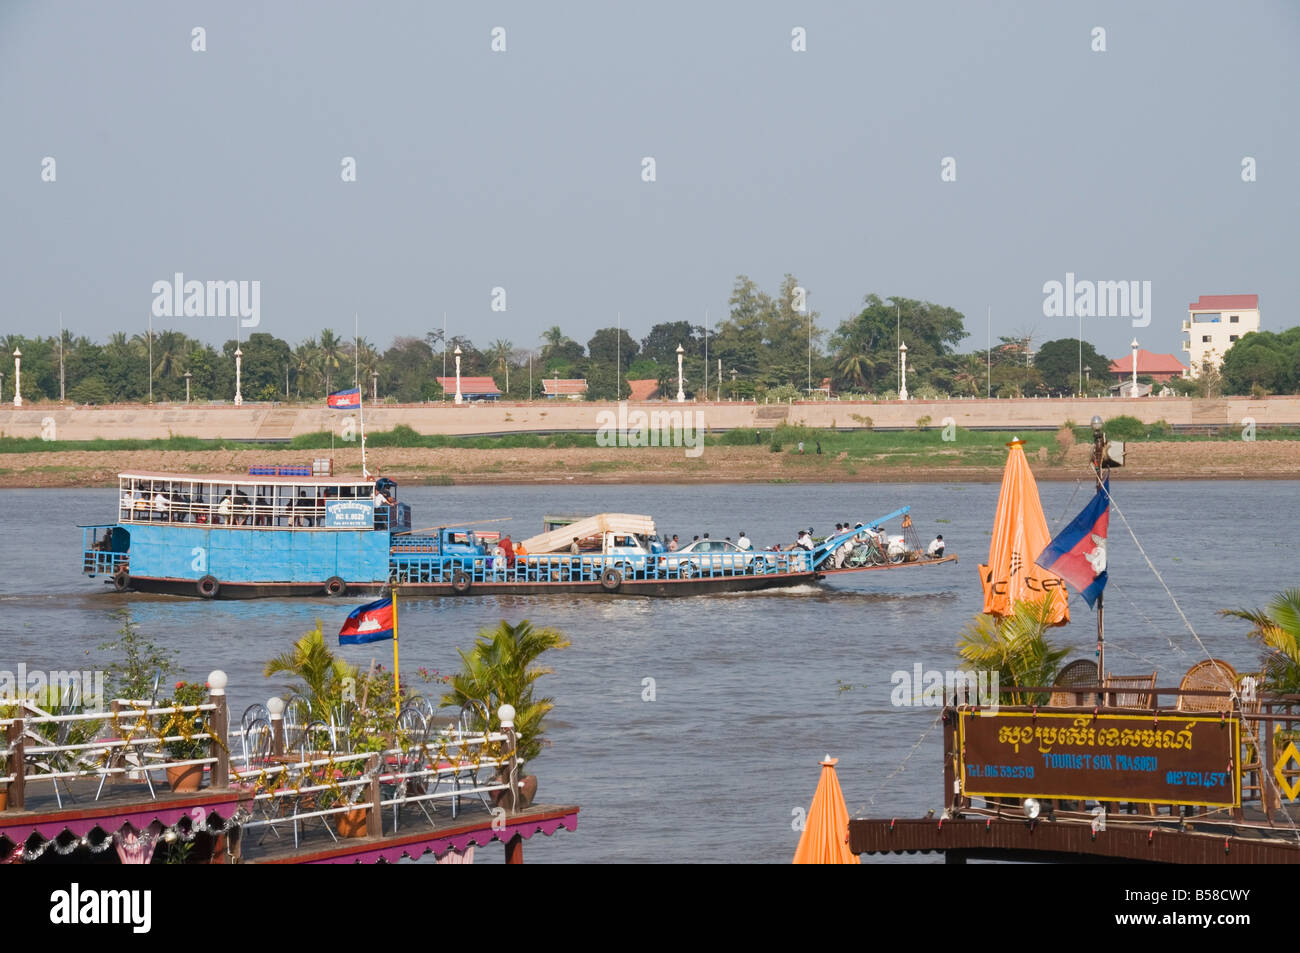 Bateaux de touristes sur la rivière Tonle Sap, Phnom Penh, Cambodge, Indochine, Asie du sud-est Banque D'Images